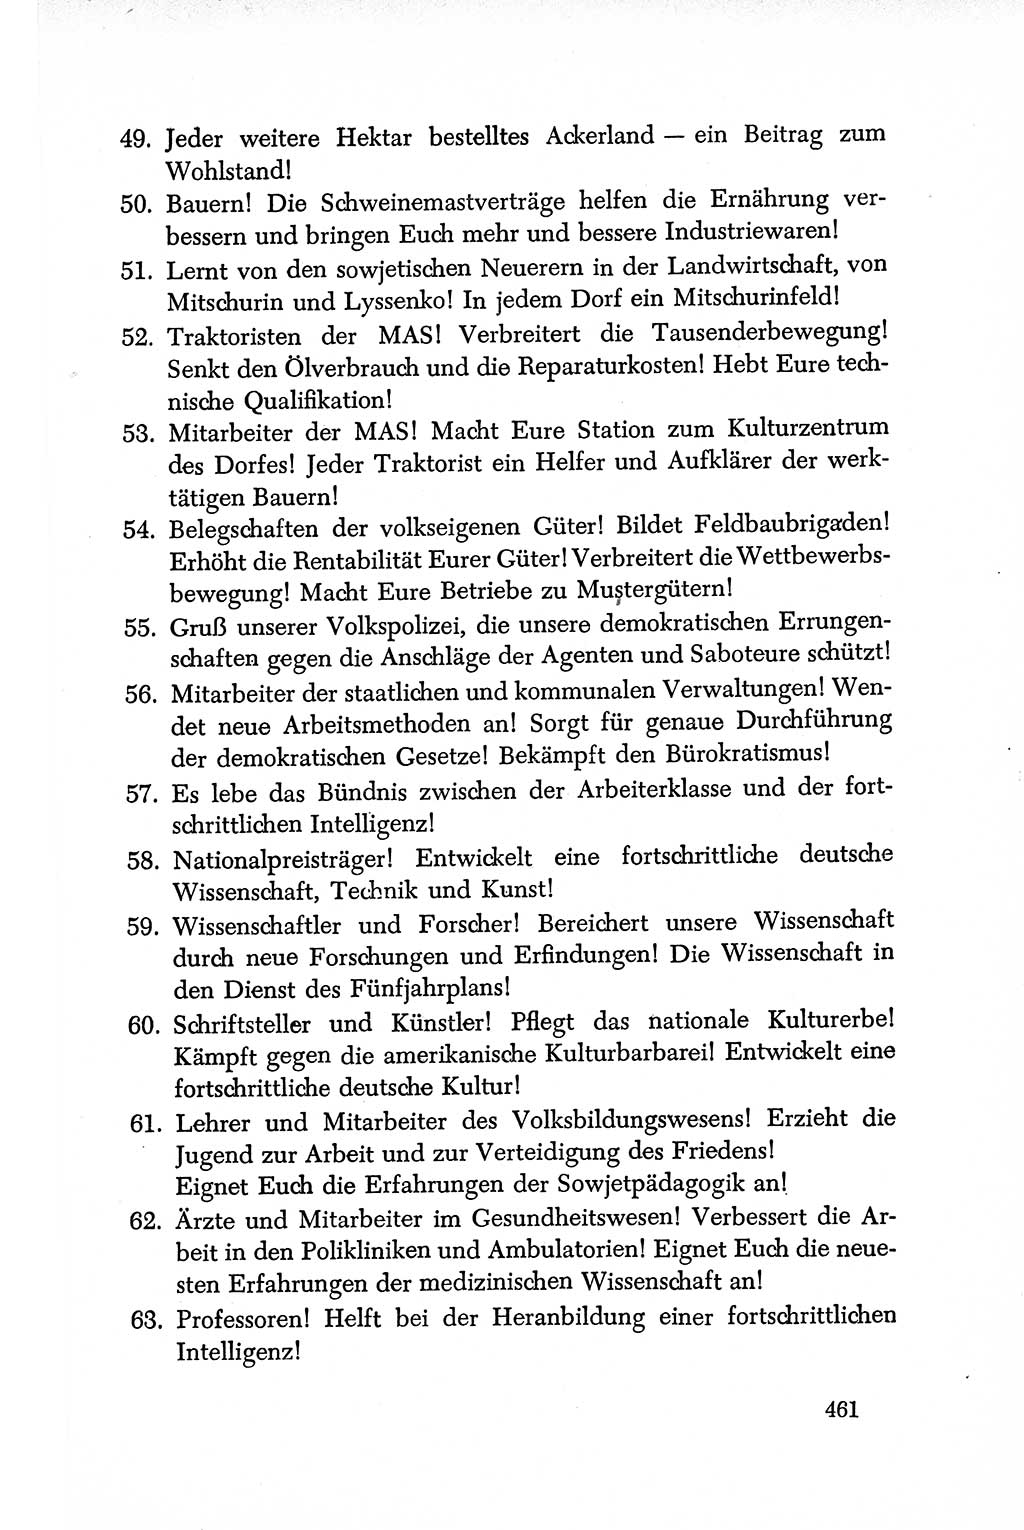 Dokumente der Sozialistischen Einheitspartei Deutschlands (SED) [Deutsche Demokratische Republik (DDR)] 1950-1952, Seite 461 (Dok. SED DDR 1950-1952, S. 461)